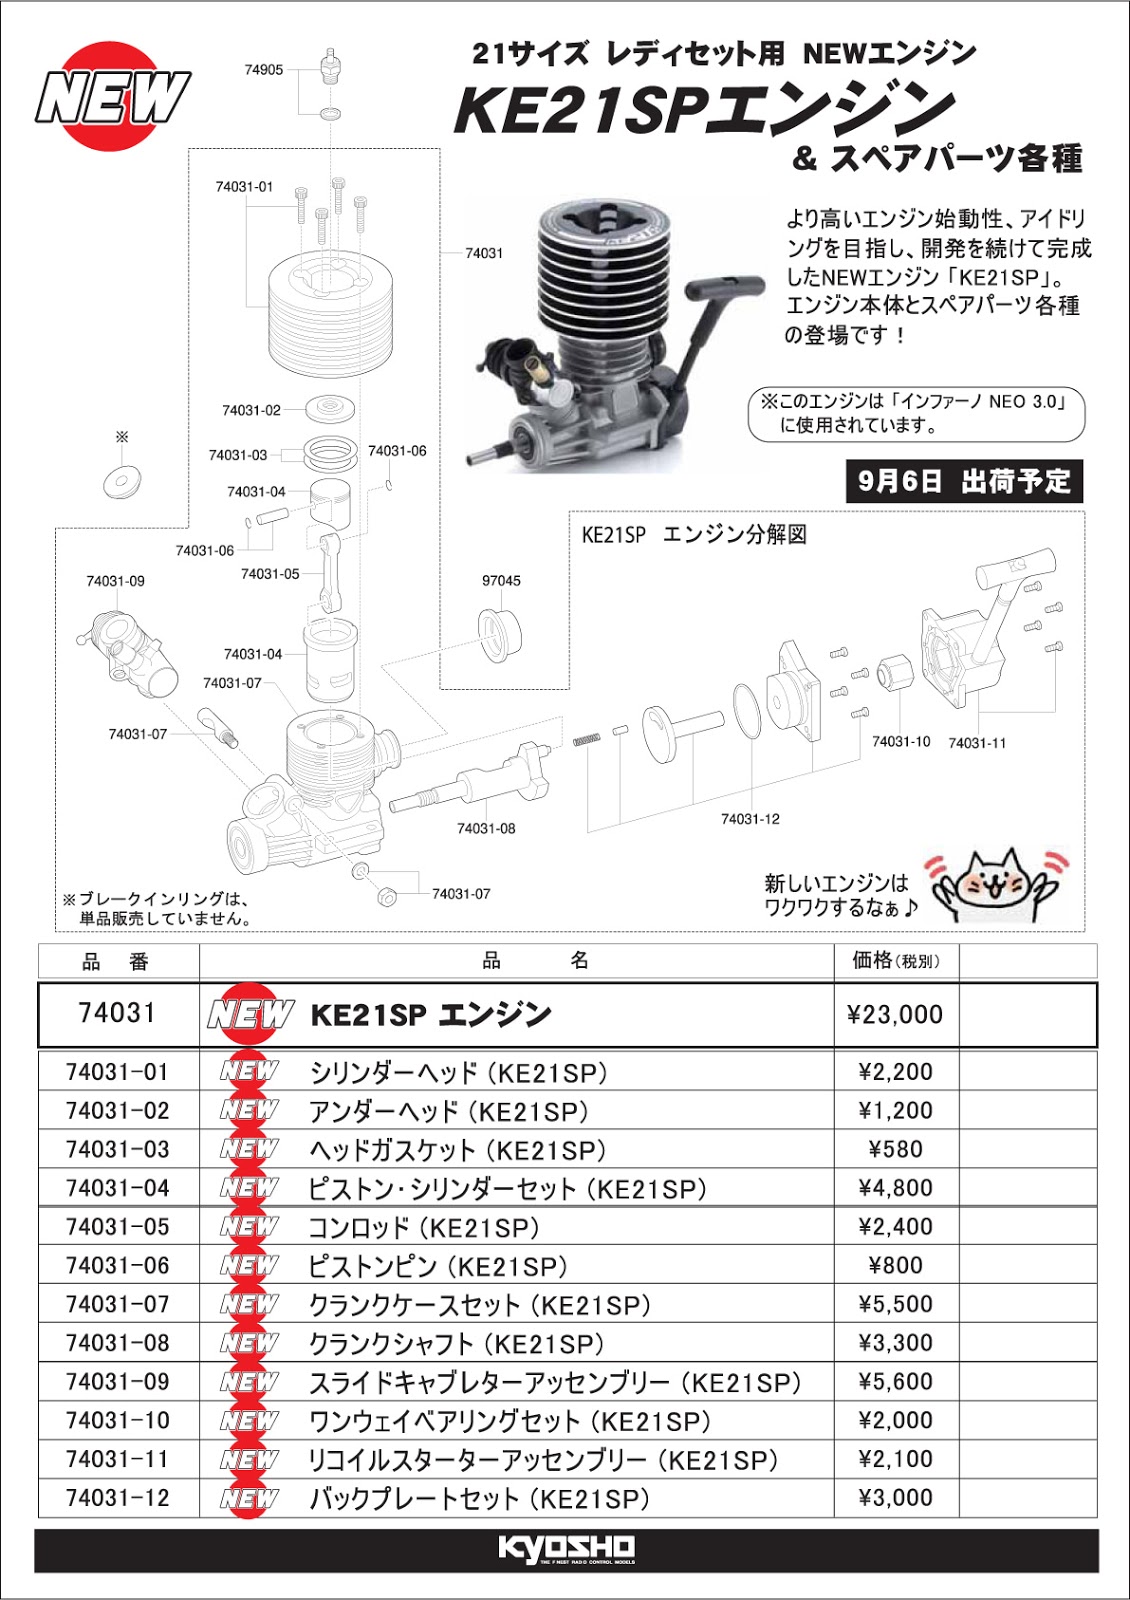 京商「KE21SPエンジン」登場|ラジコンもんちぃ - ラジコンニュースサイト